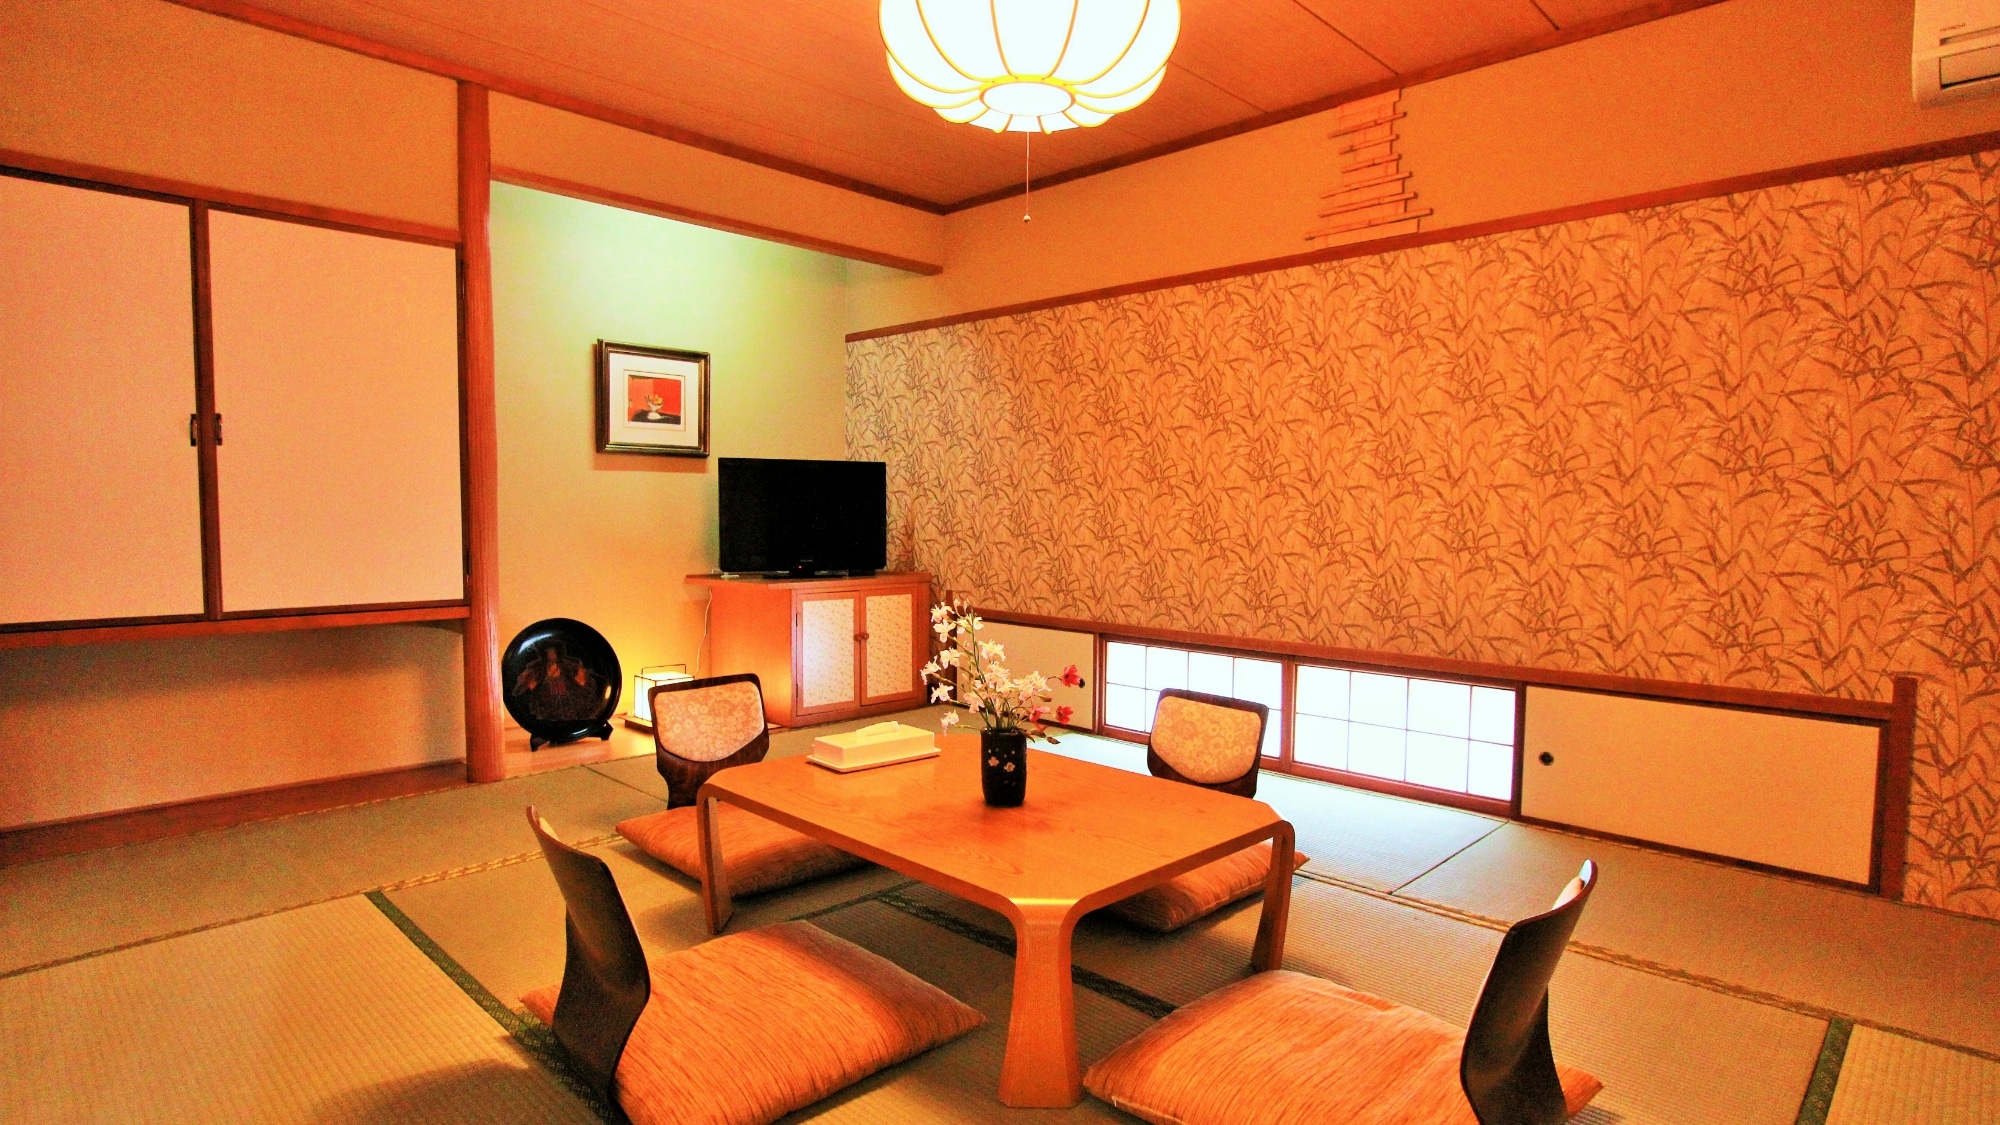 일본식 방 10 다다미 느긋하게 넓은 일본식 공간을 즐겨주세요